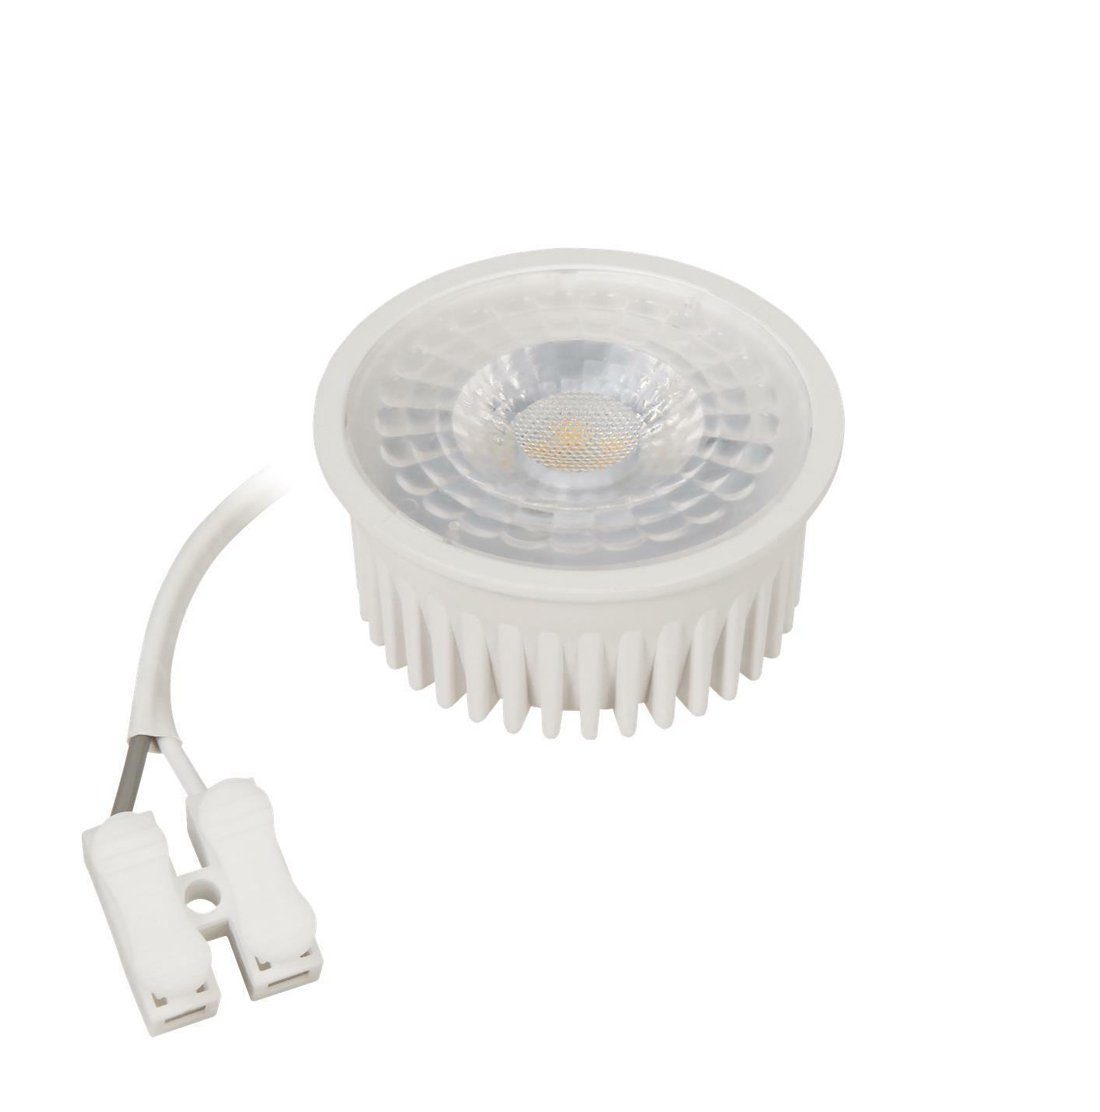 MR16, Warmeslicht LED Warmweiß, und Abstrahlwinkel GU10 Einbaustrahler, Flache 5W Lumen, Alternative 230V LED, Extra 350 für Lampe McShine LED-Leuchtmittel Leuchtmittel COB 36°, Modul